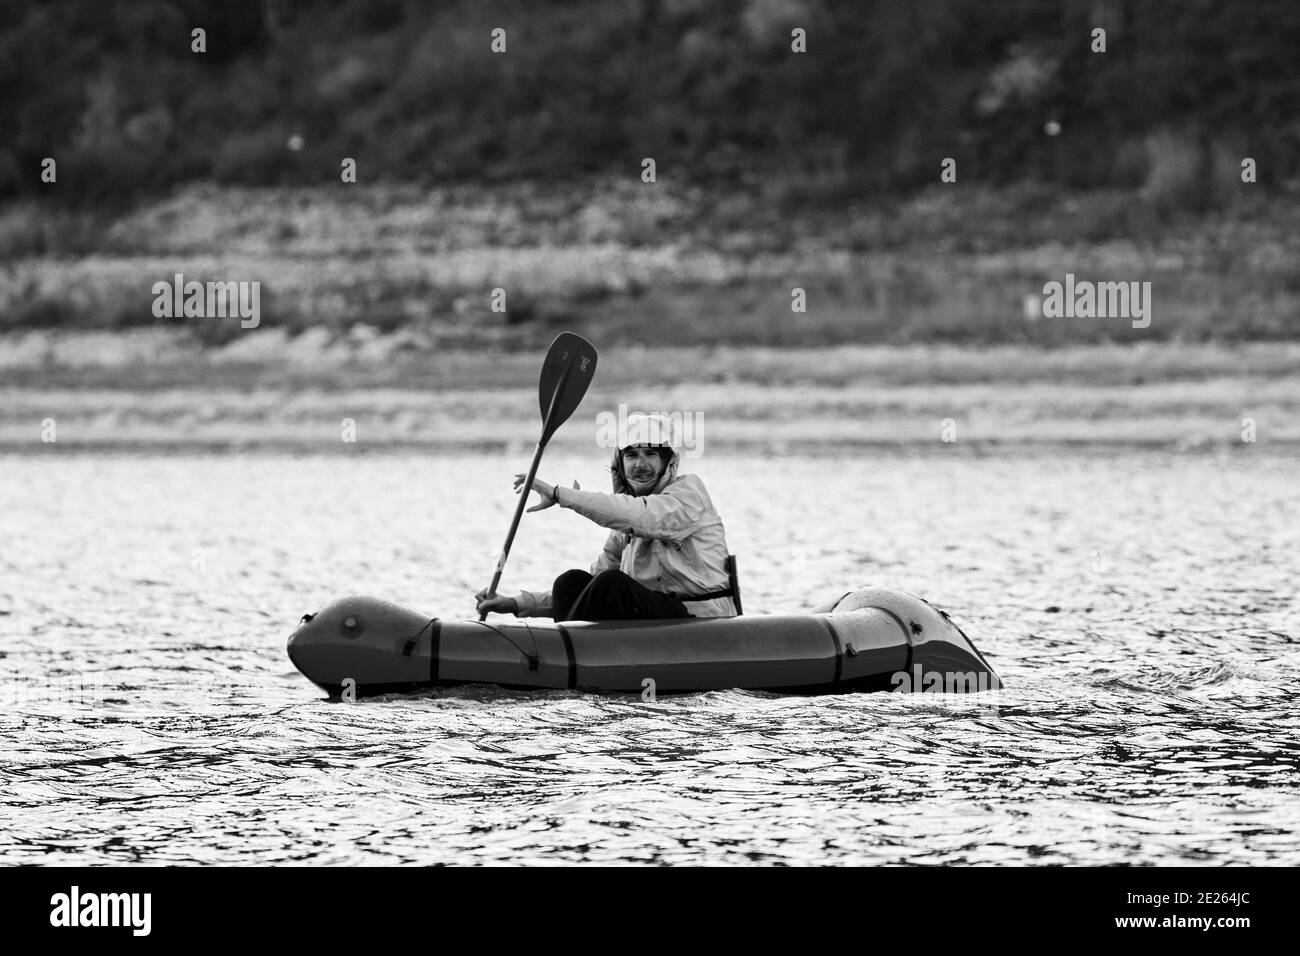 Packraft (ein-Person-Leichtfloß für Expedition oder Abenteuer-Rennen verwendet) auf einem See, Schlauchboot Fahrt auf einem Bergsee. Stockfoto